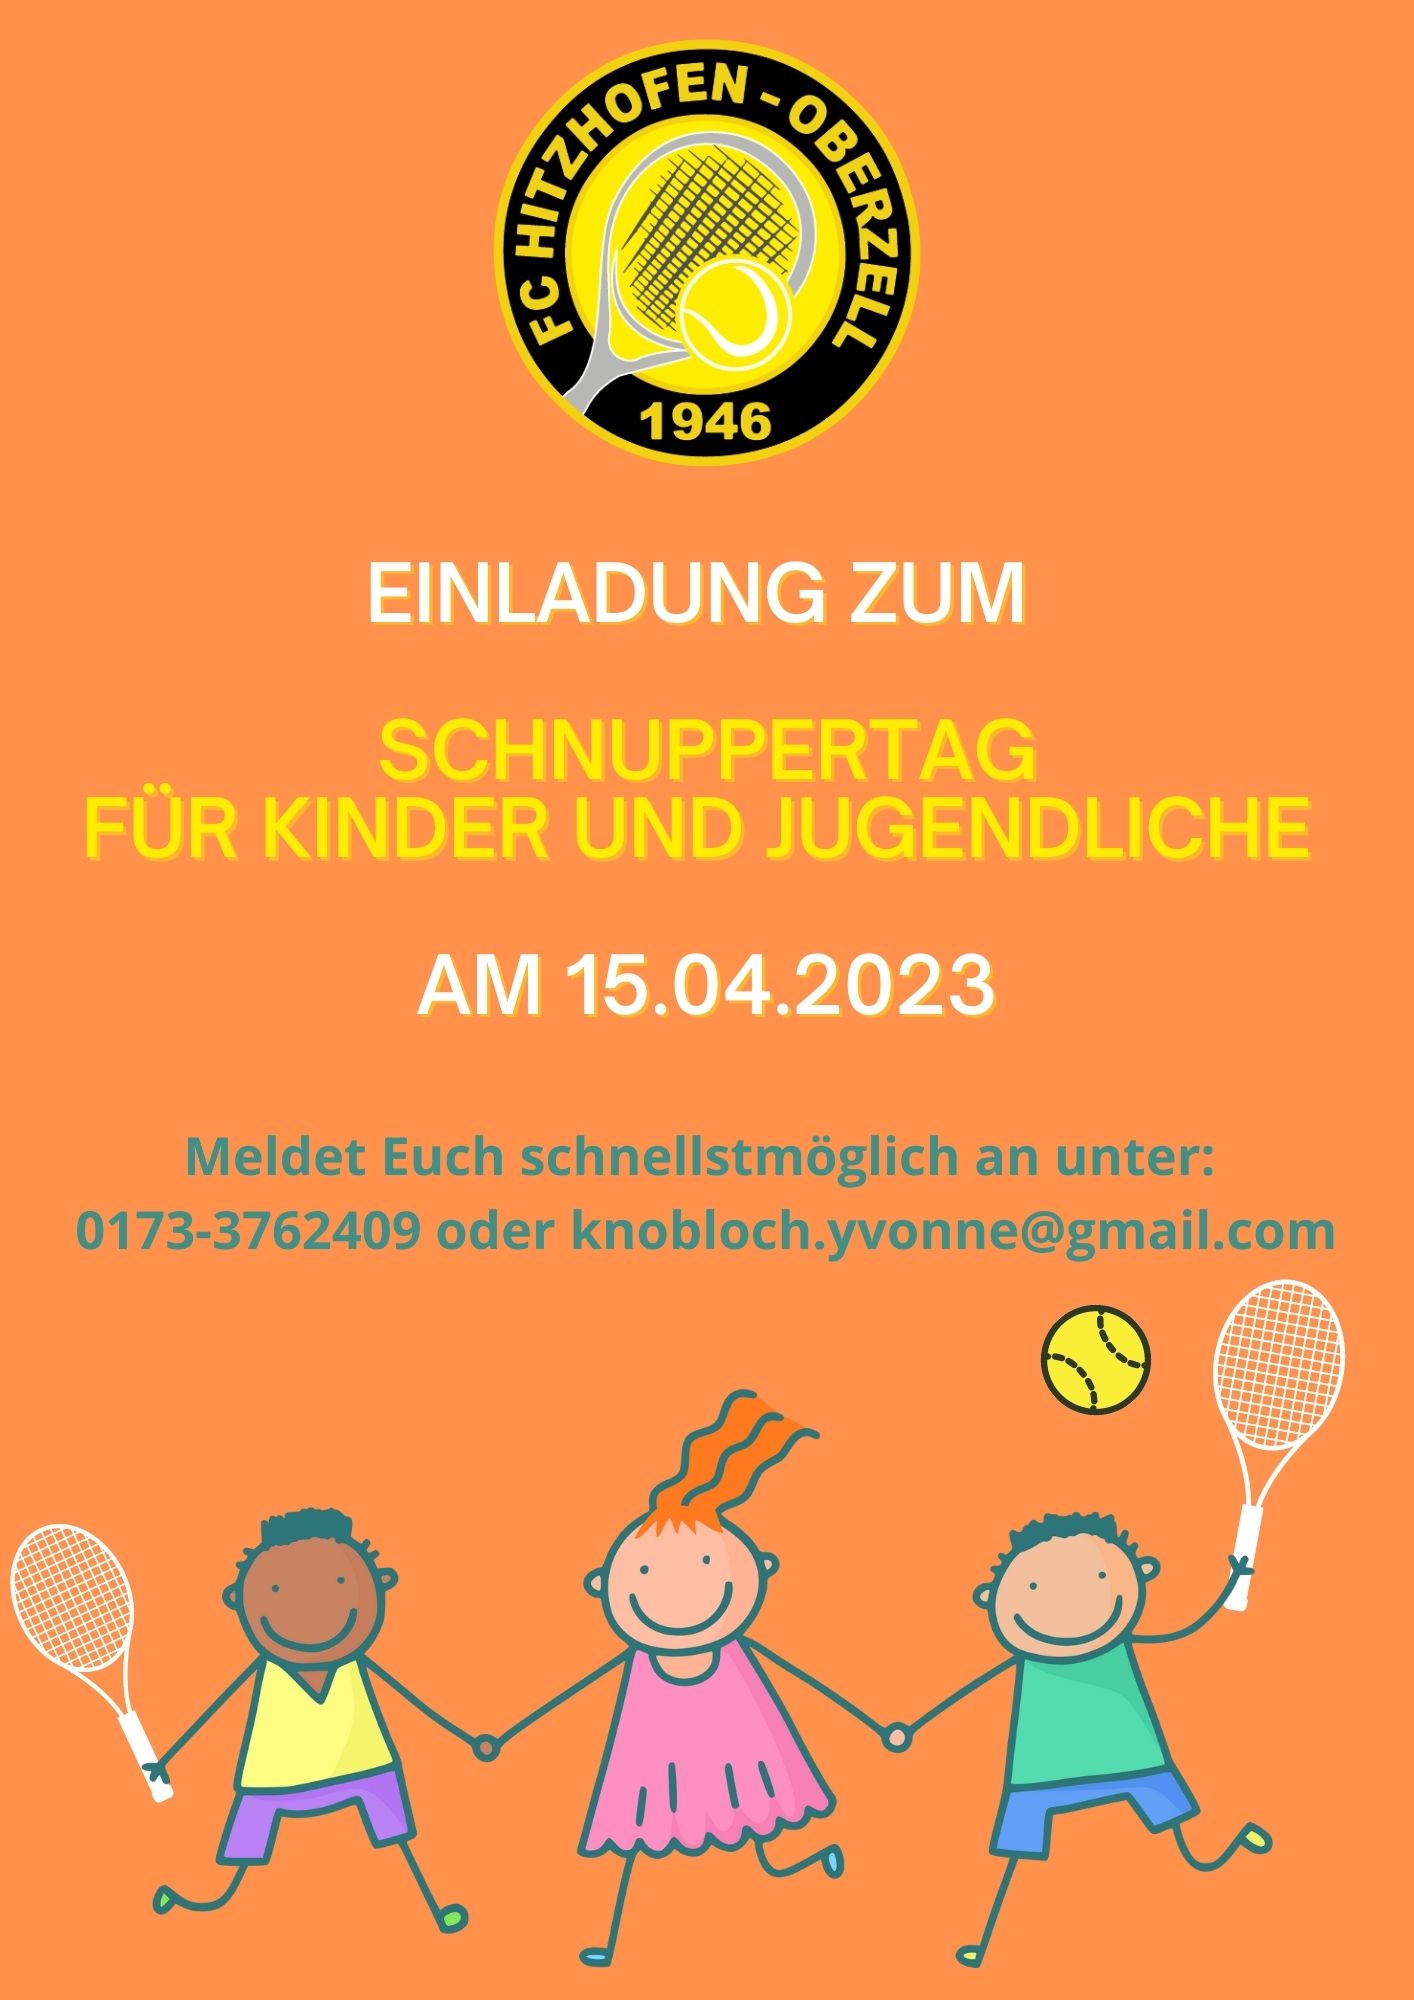 Einladung_Schnuppertag_Kinder_und_Jugendliche_2023_1.jpg